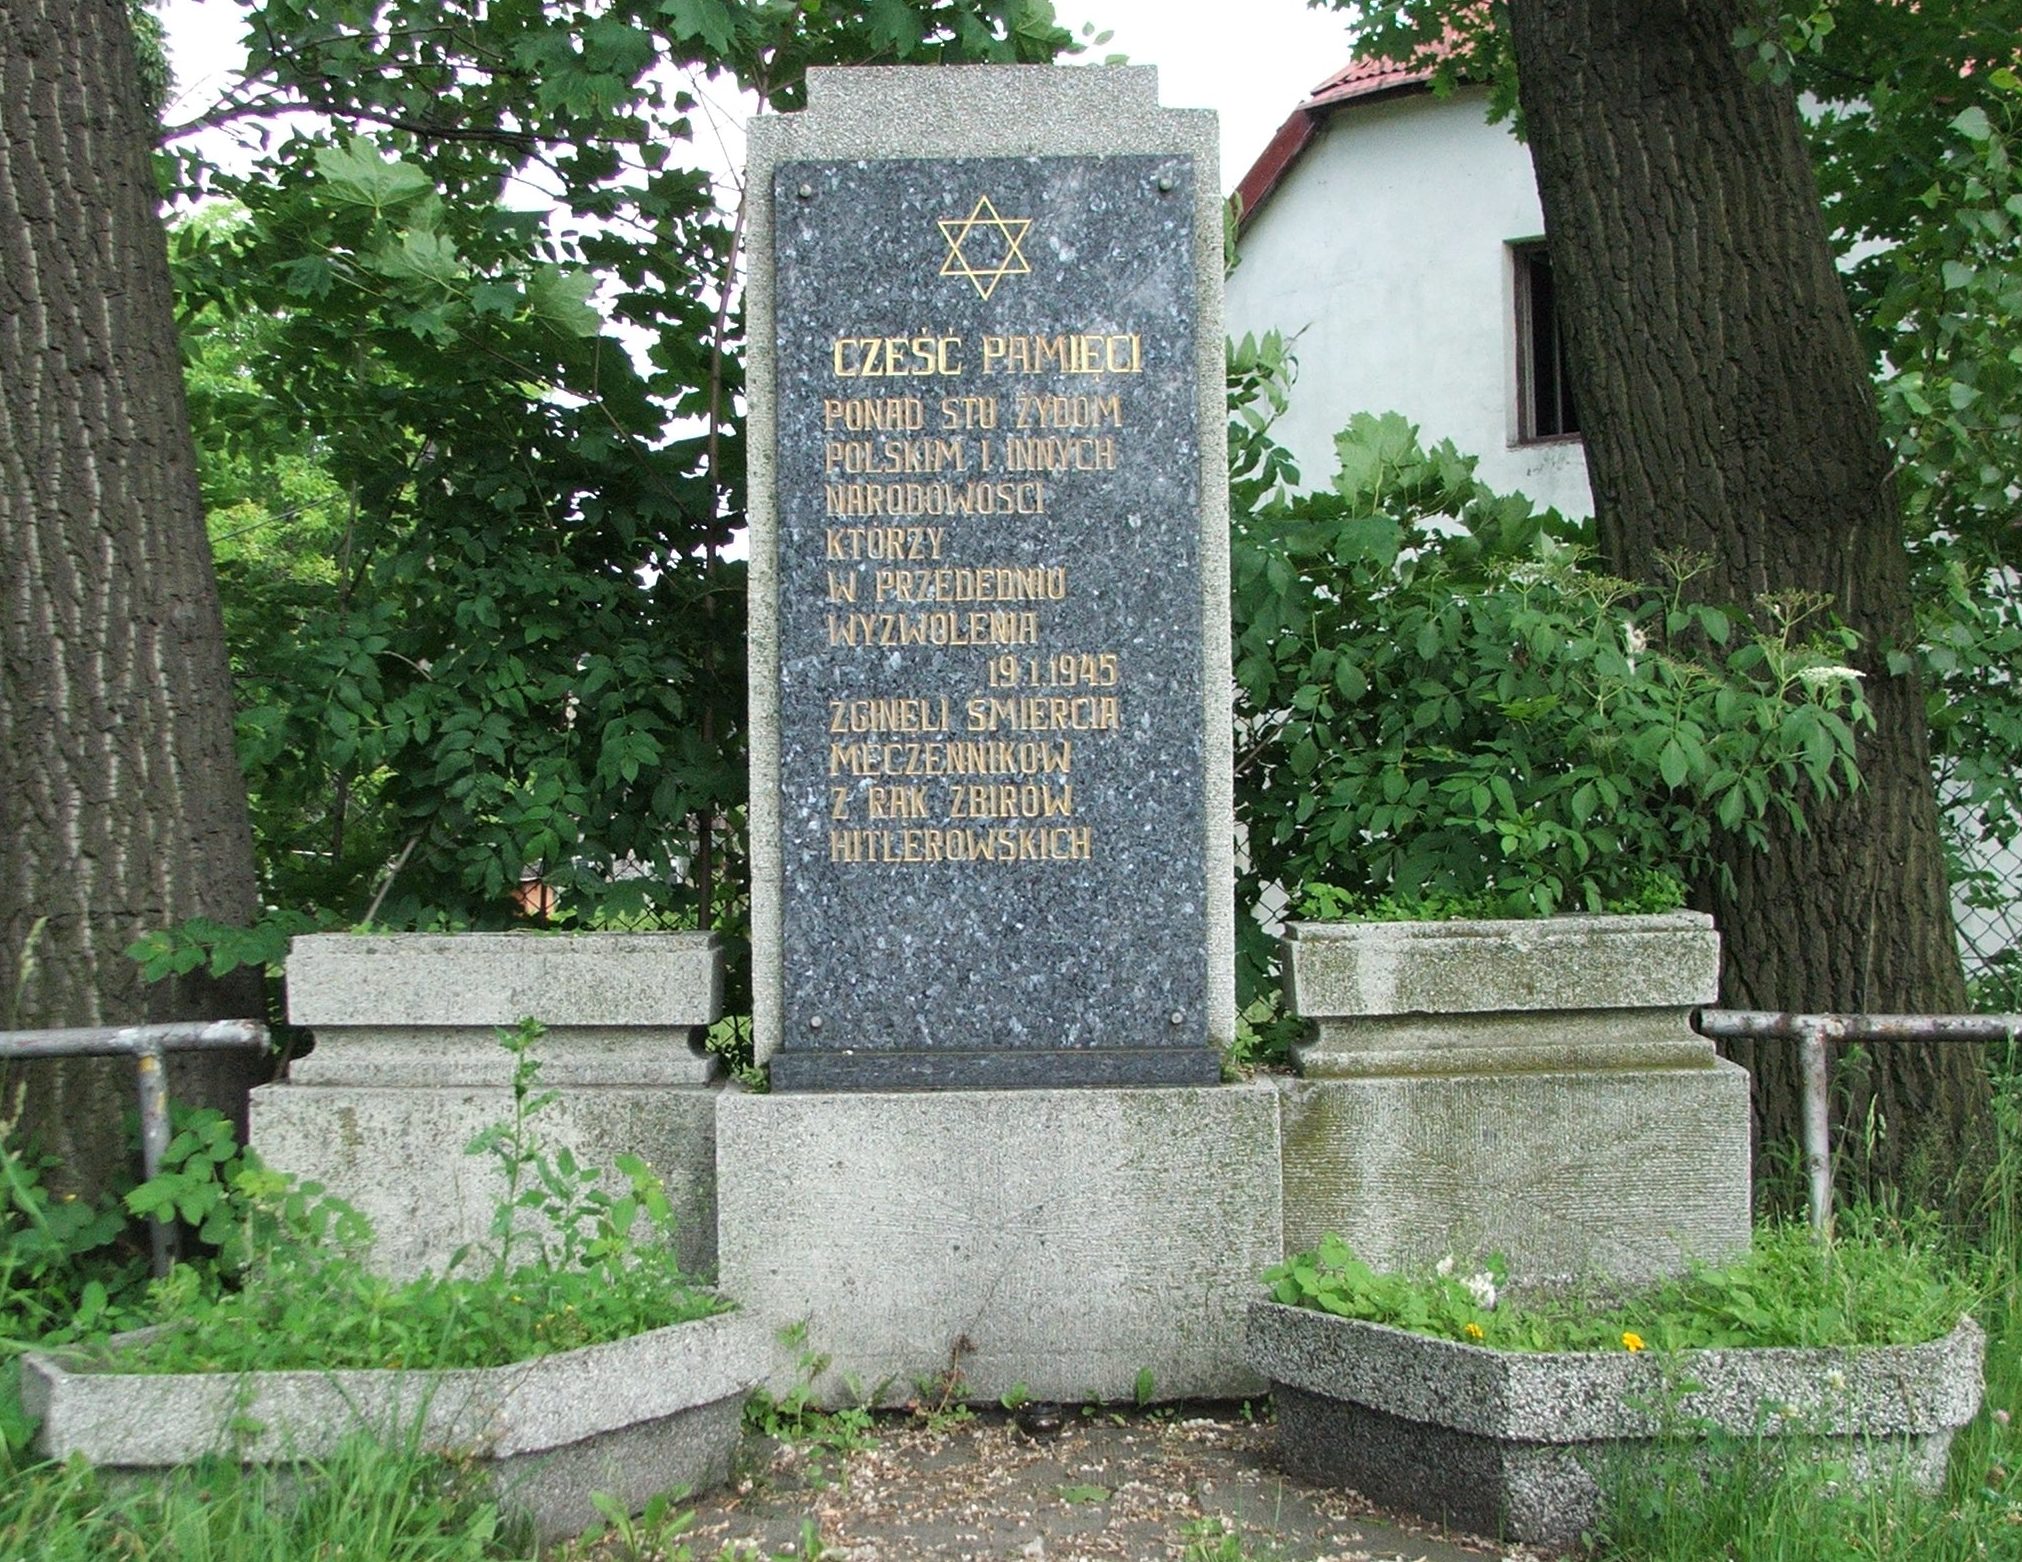 г. Чеховице-Дзедзице, Бельского повята. Памятник жертвам холокоста.